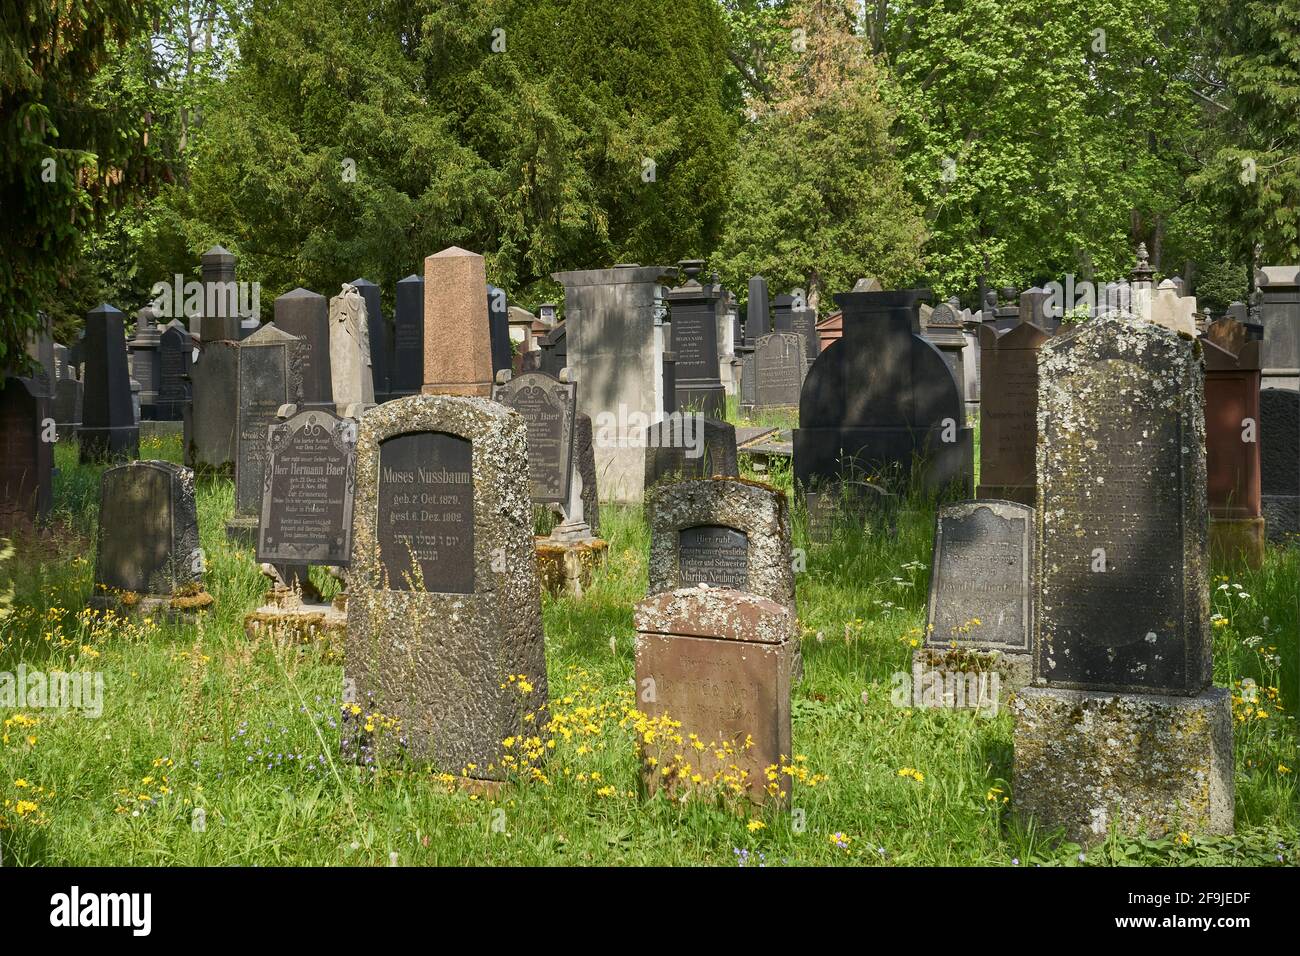 Grabmale, Alter jüdischer Friedhof Rat-Beil-Straße, am Hauptfriedhof, Frankfurt am Main, Hessen, Deutschland Stock Photo